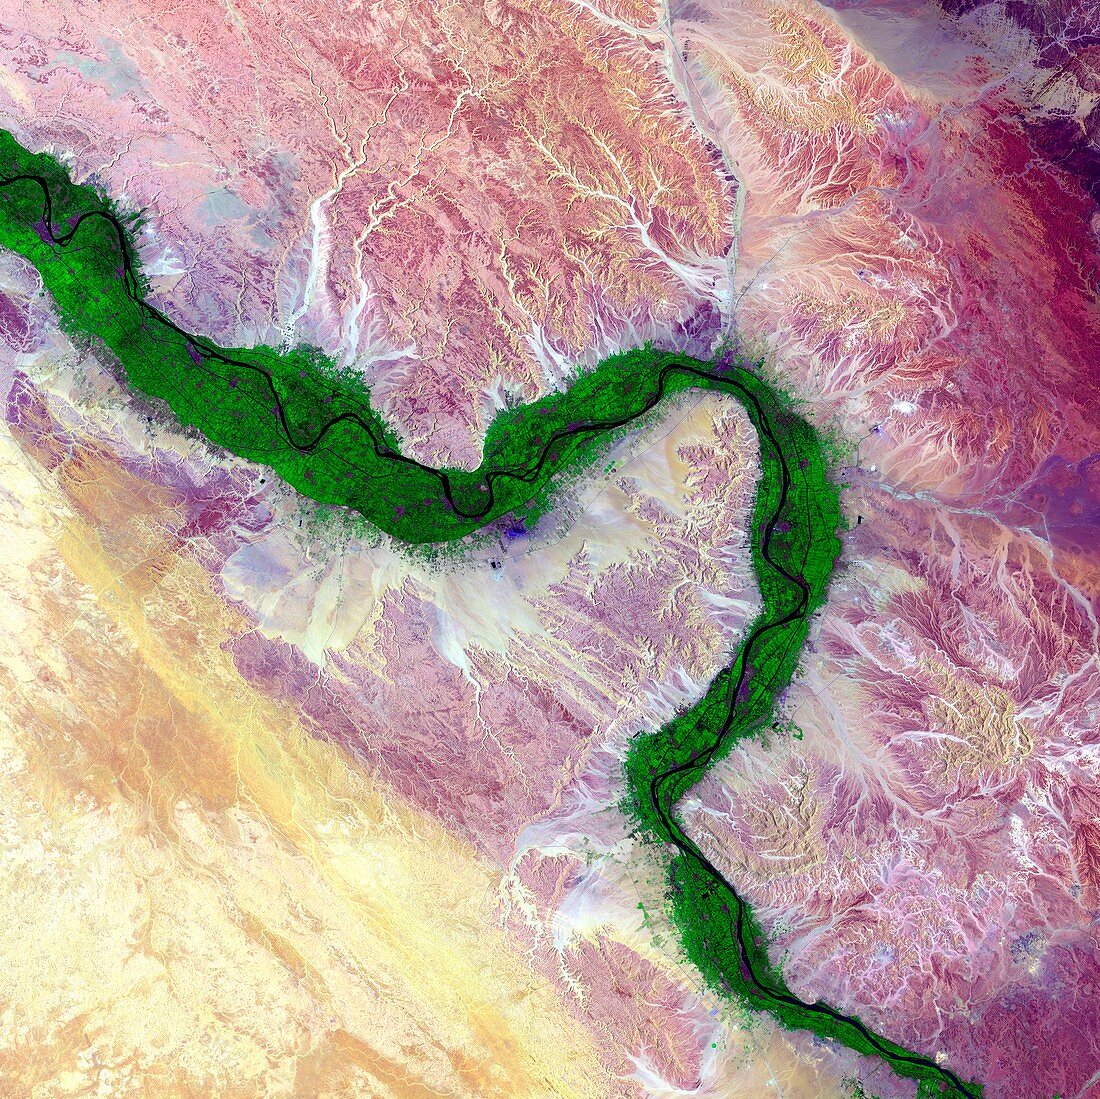 Nile and Egyptian desert, satellite image